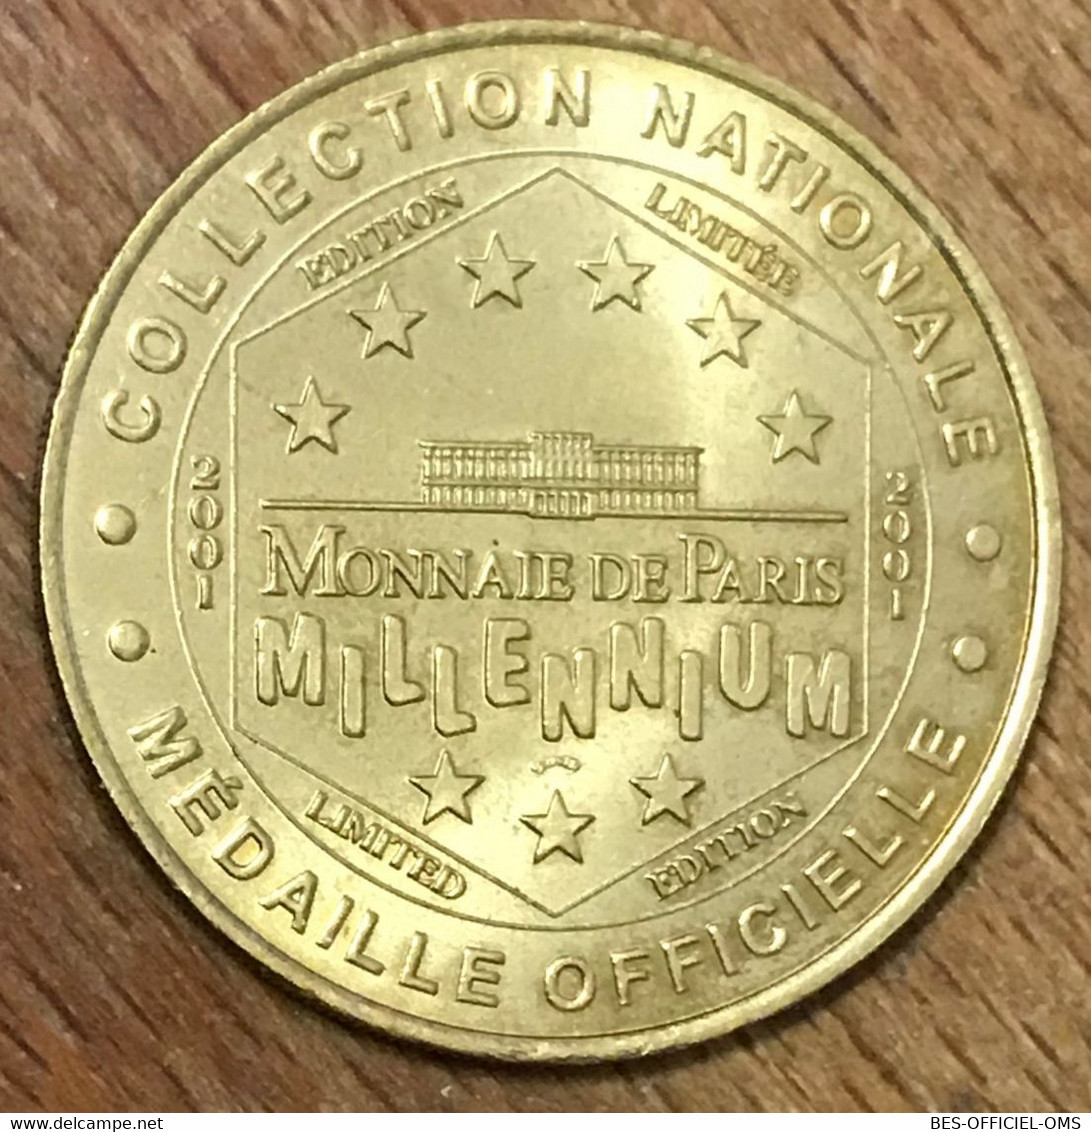 75001 PARIS MUSÉE DU LOUVRE MDP 2001 MÉDAILLE SOUVENIR MONNAIE DE PARIS JETON TOURISTIQUE MEDALS COINS TOKENS - 2001